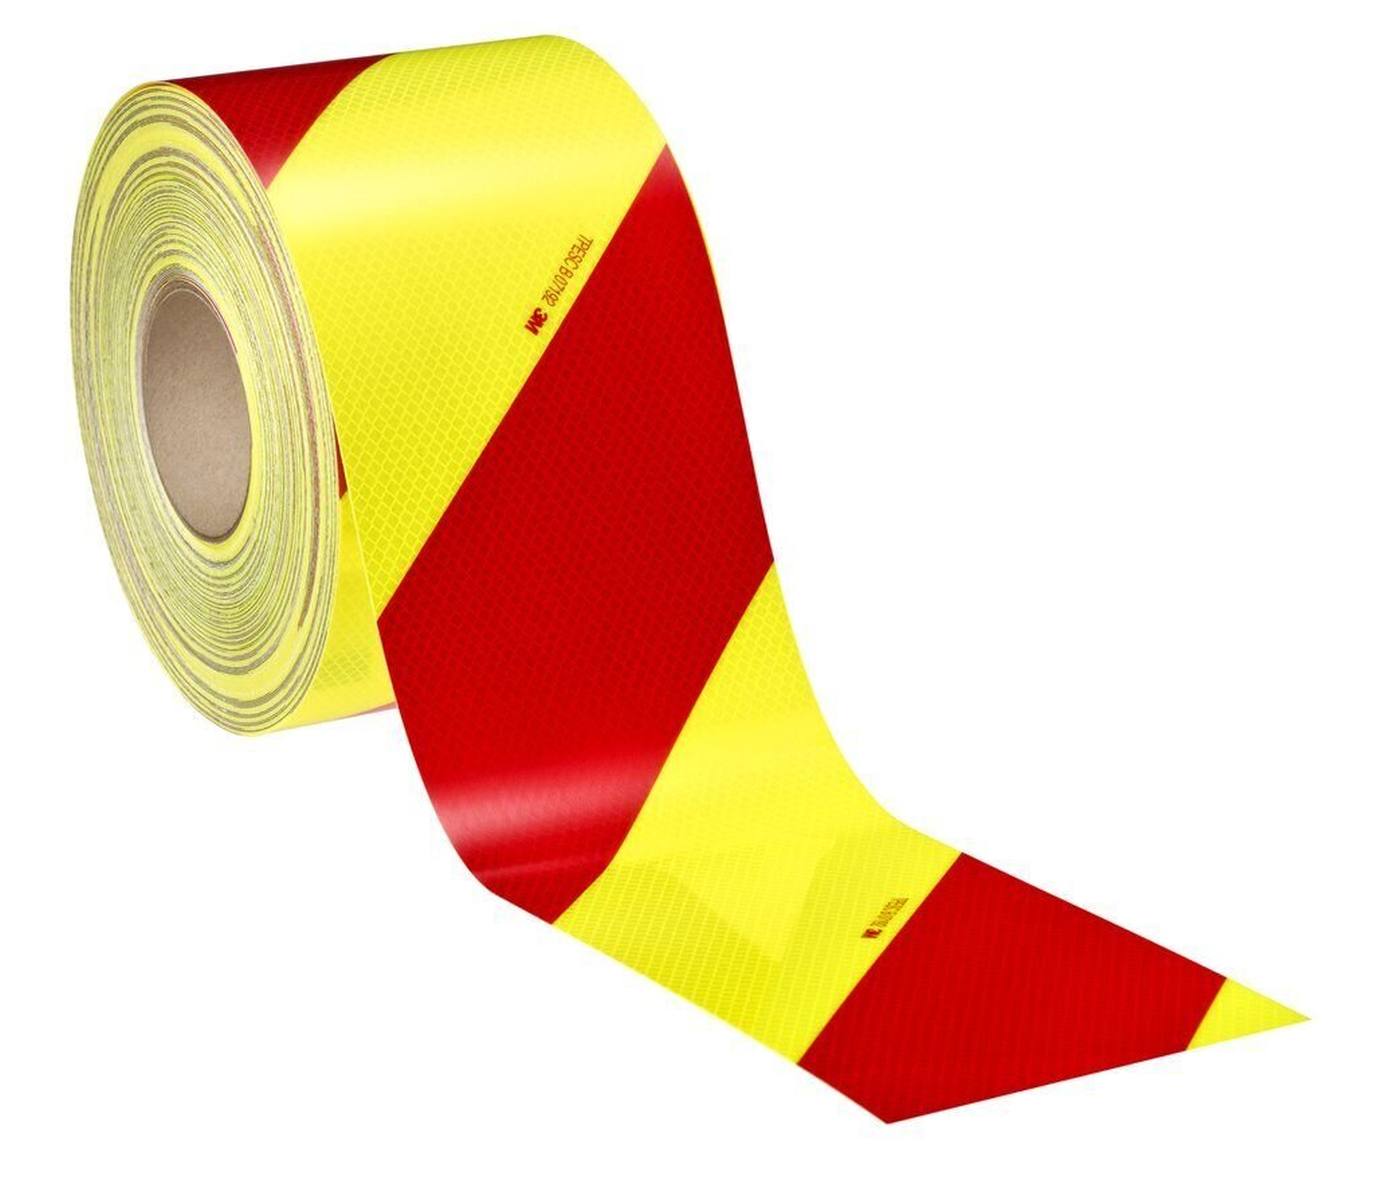 3M Diamond Grade DG³ Ajoneuvojen varoitusmerkintä 4083-33, punainen/fluoresoiva keltainen 1x oikealle osoittava / 1x vasemmalle osoittava, 140 mm x 45,7 m.